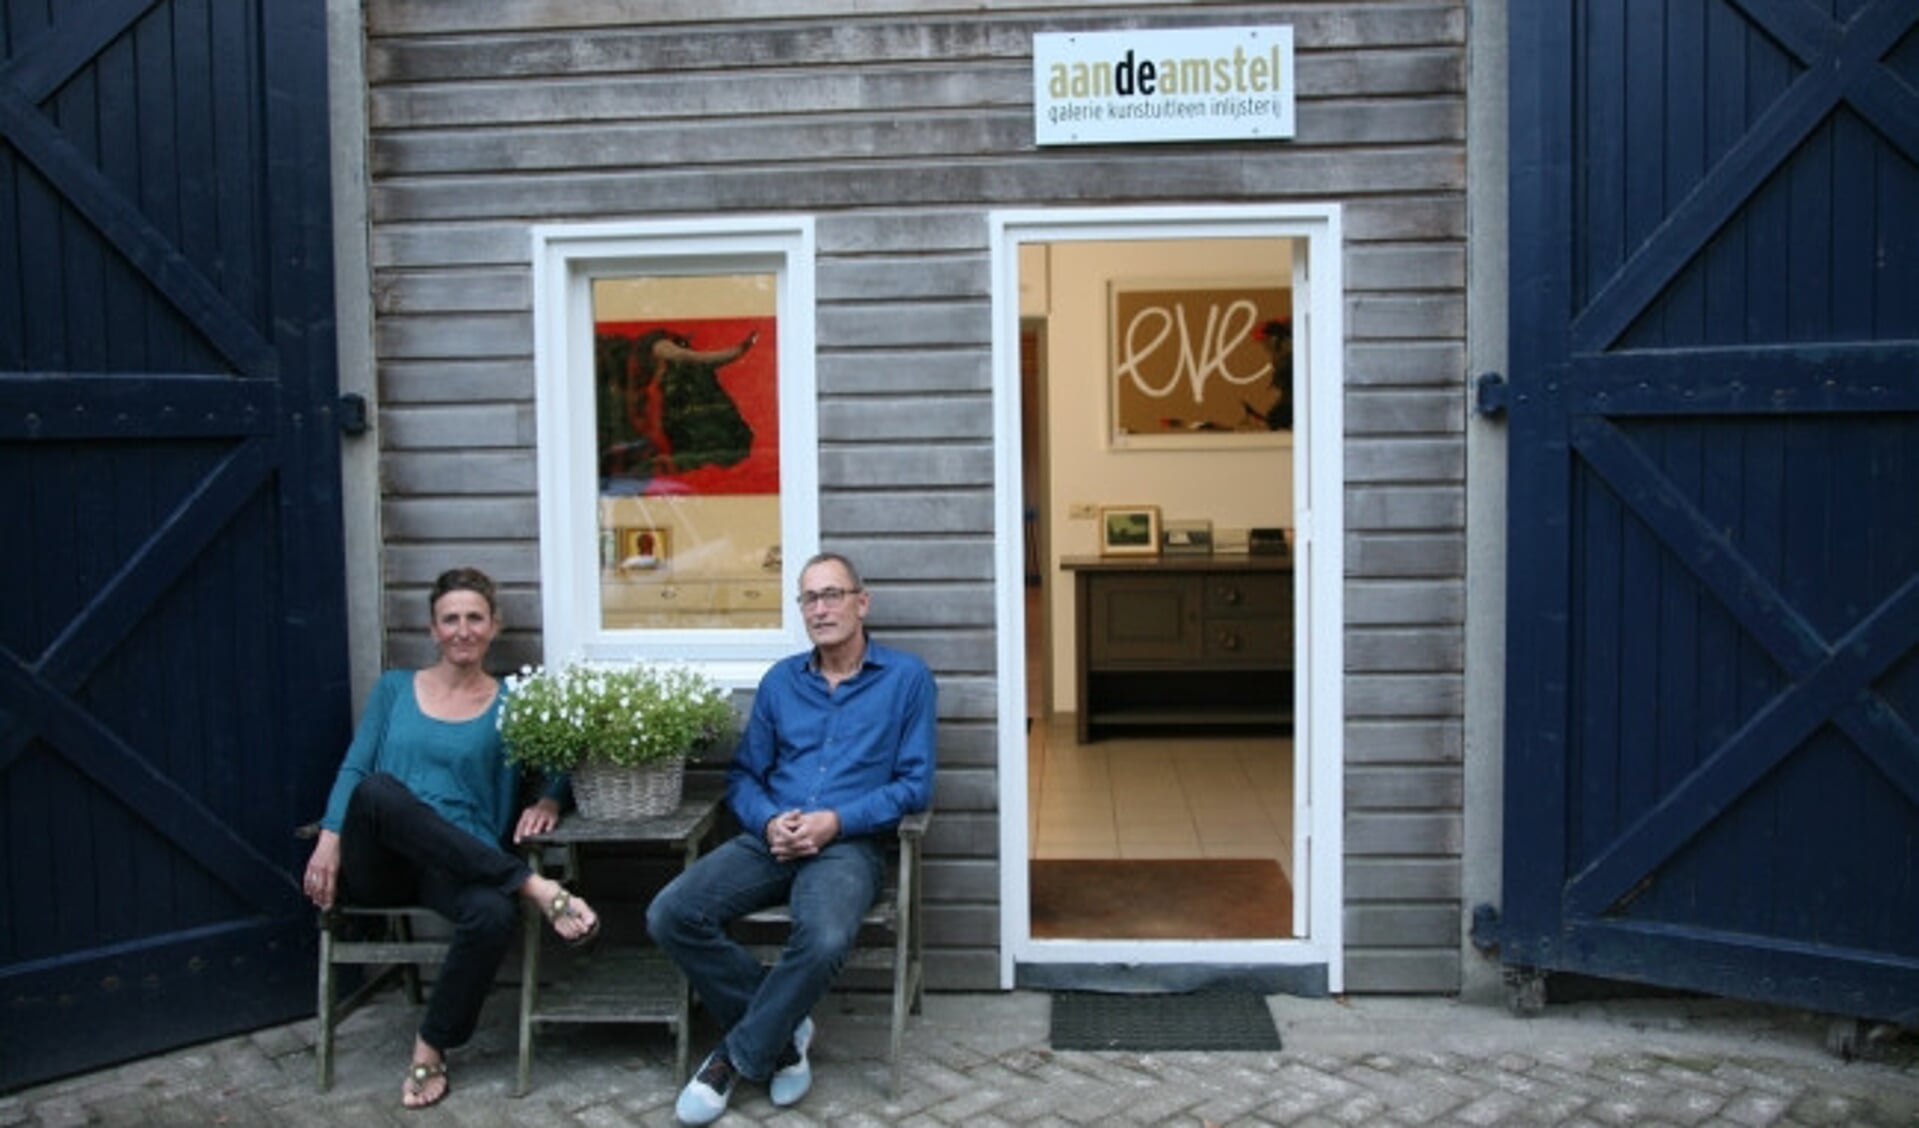  Caroline Bik en Wim Schoonhoven voor hun galerie.